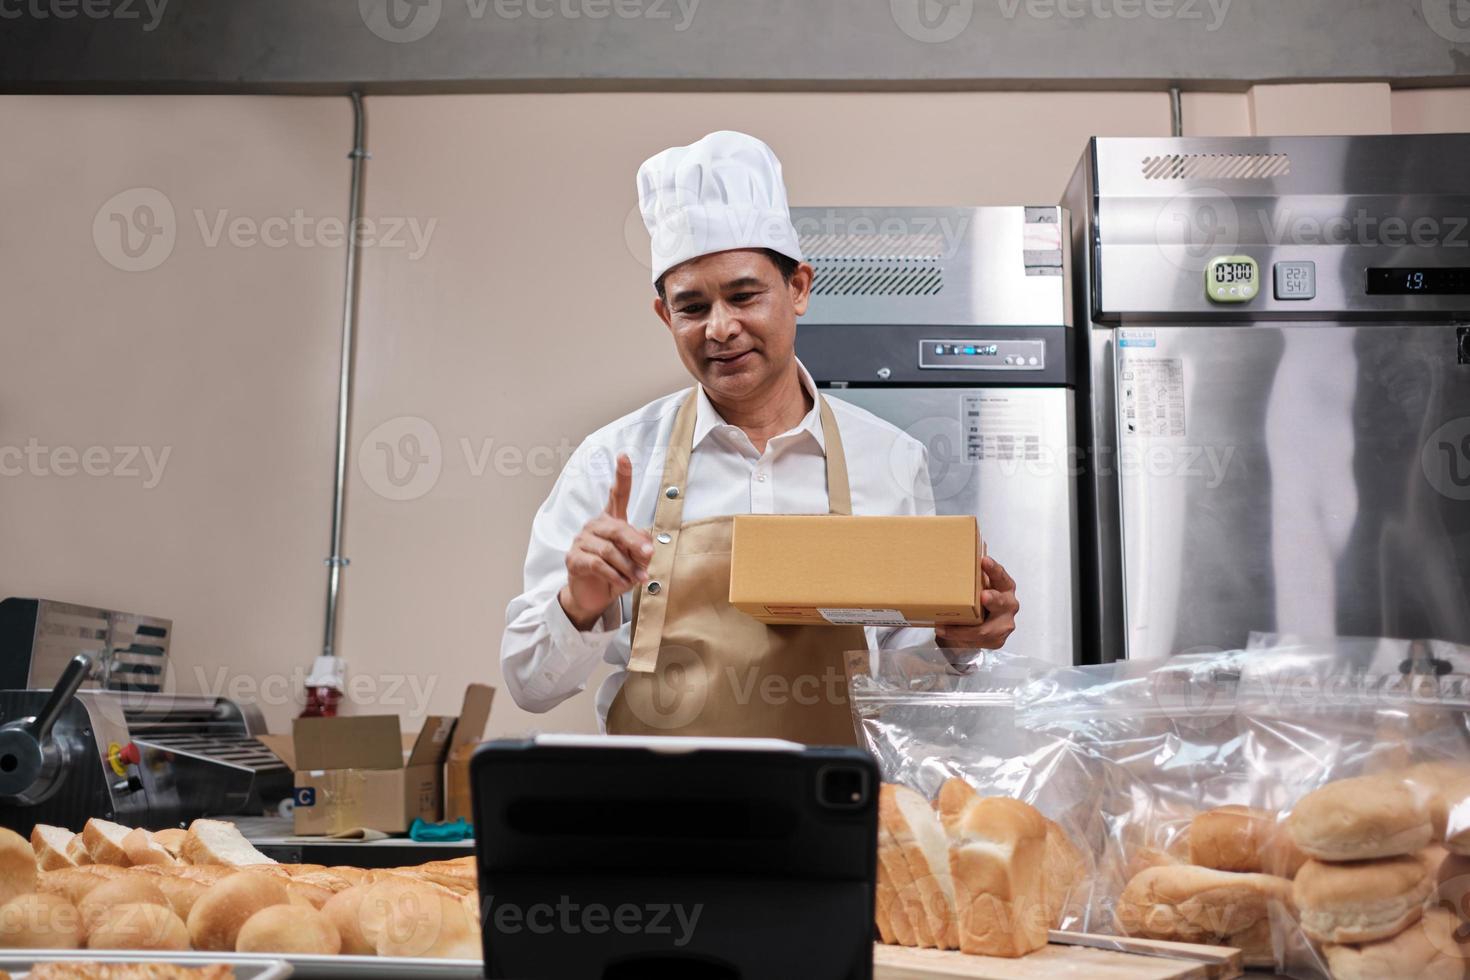 chef masculin asiatique senior en tablier, blogueur de petite entreprise en direct via la technologie d'application mobile, promotion en ligne des ventes de boulangerie, pain frais, pâtisserie et cuisine commerciale dans la cuisine. photo